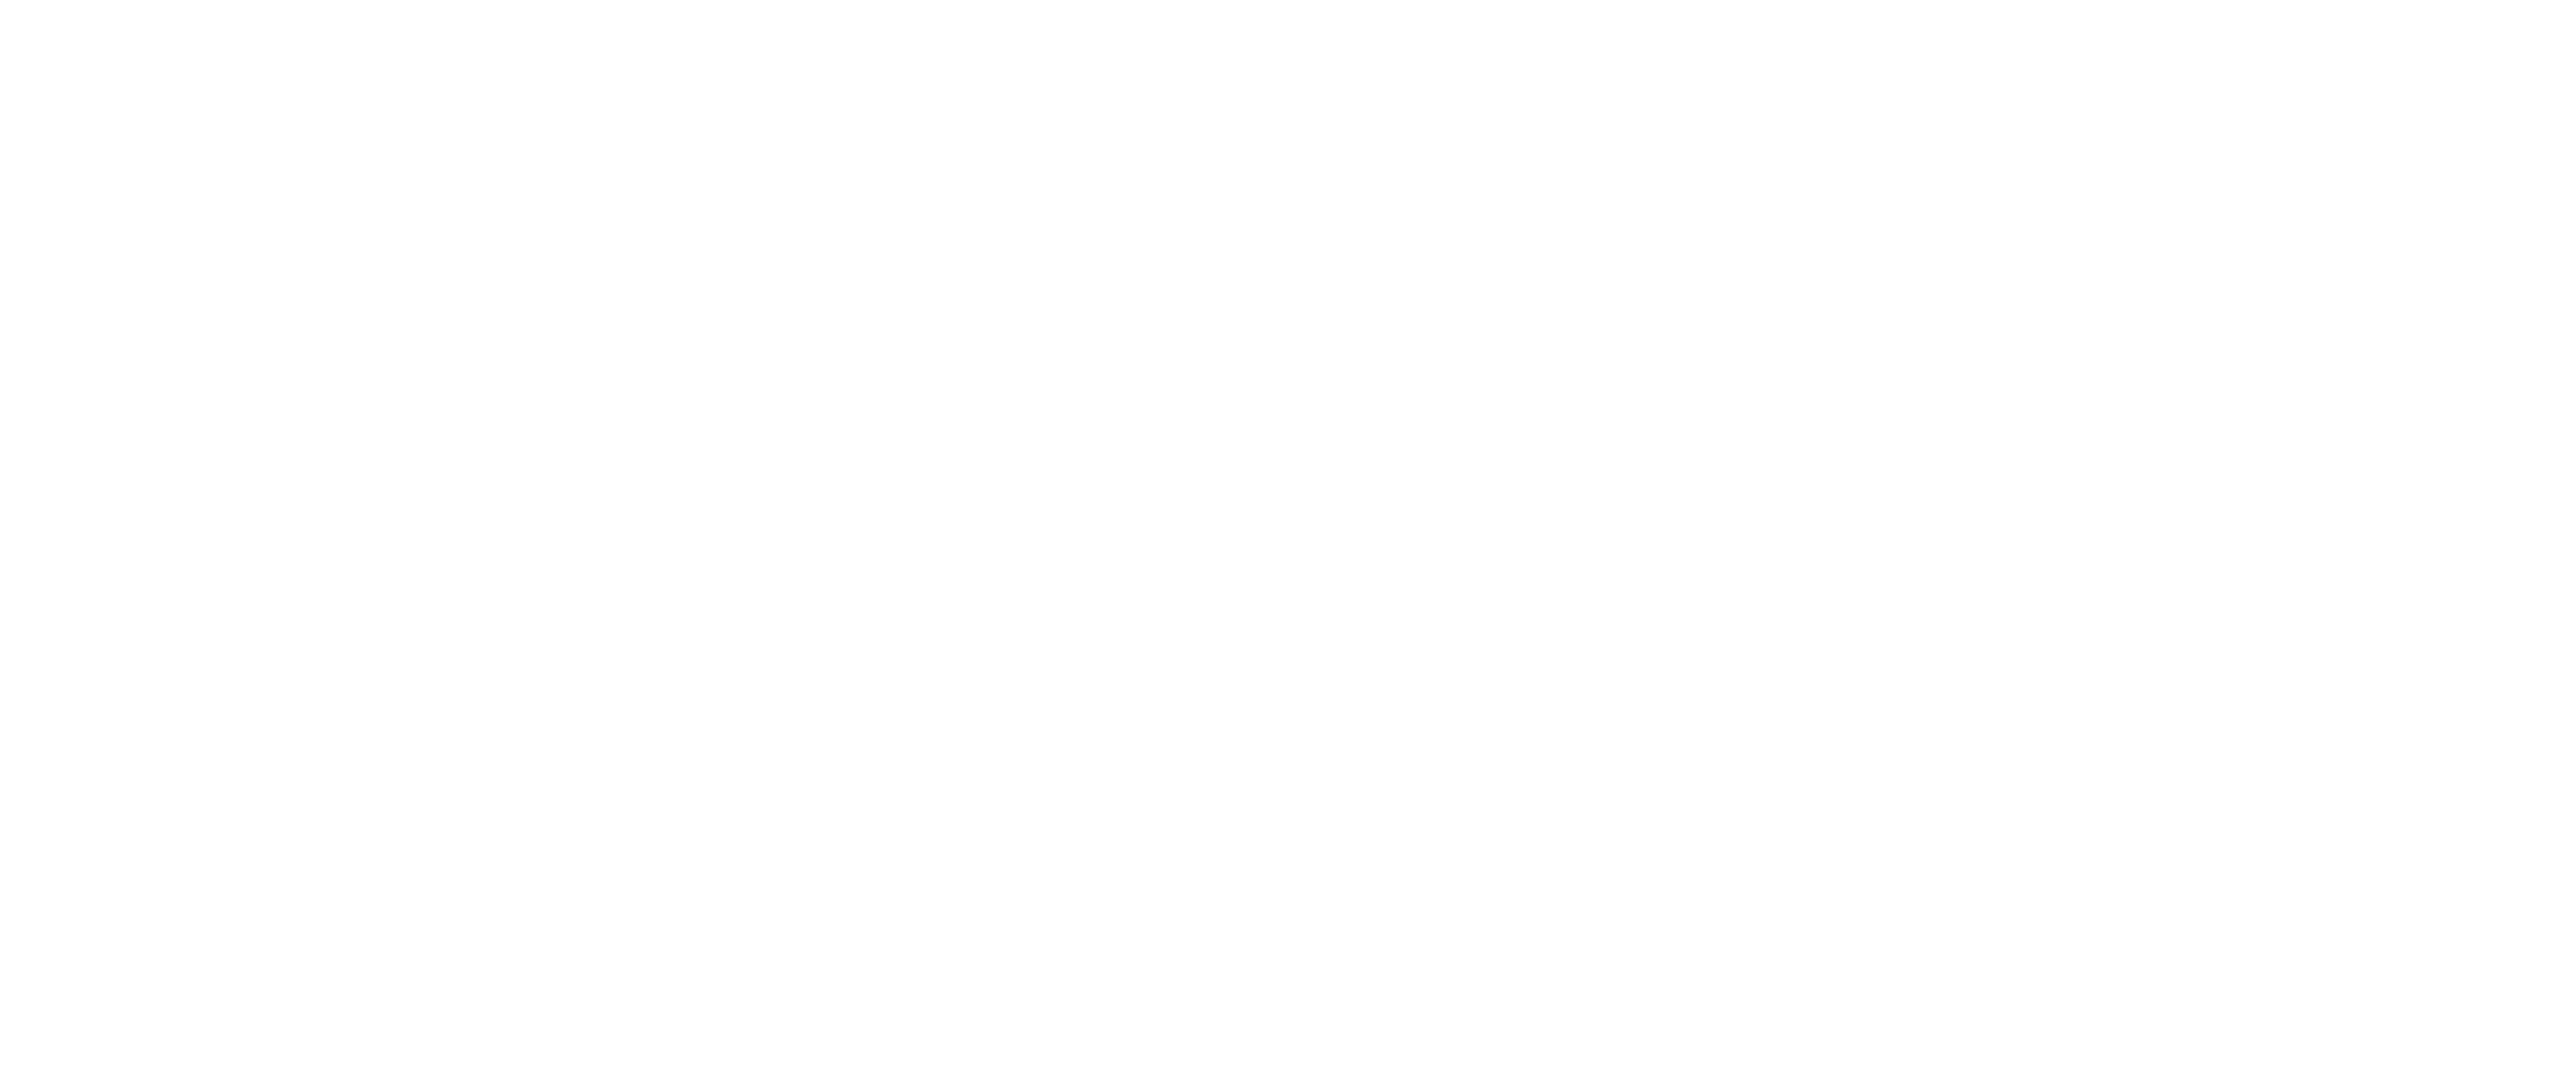 Century-21-logo-logo-white